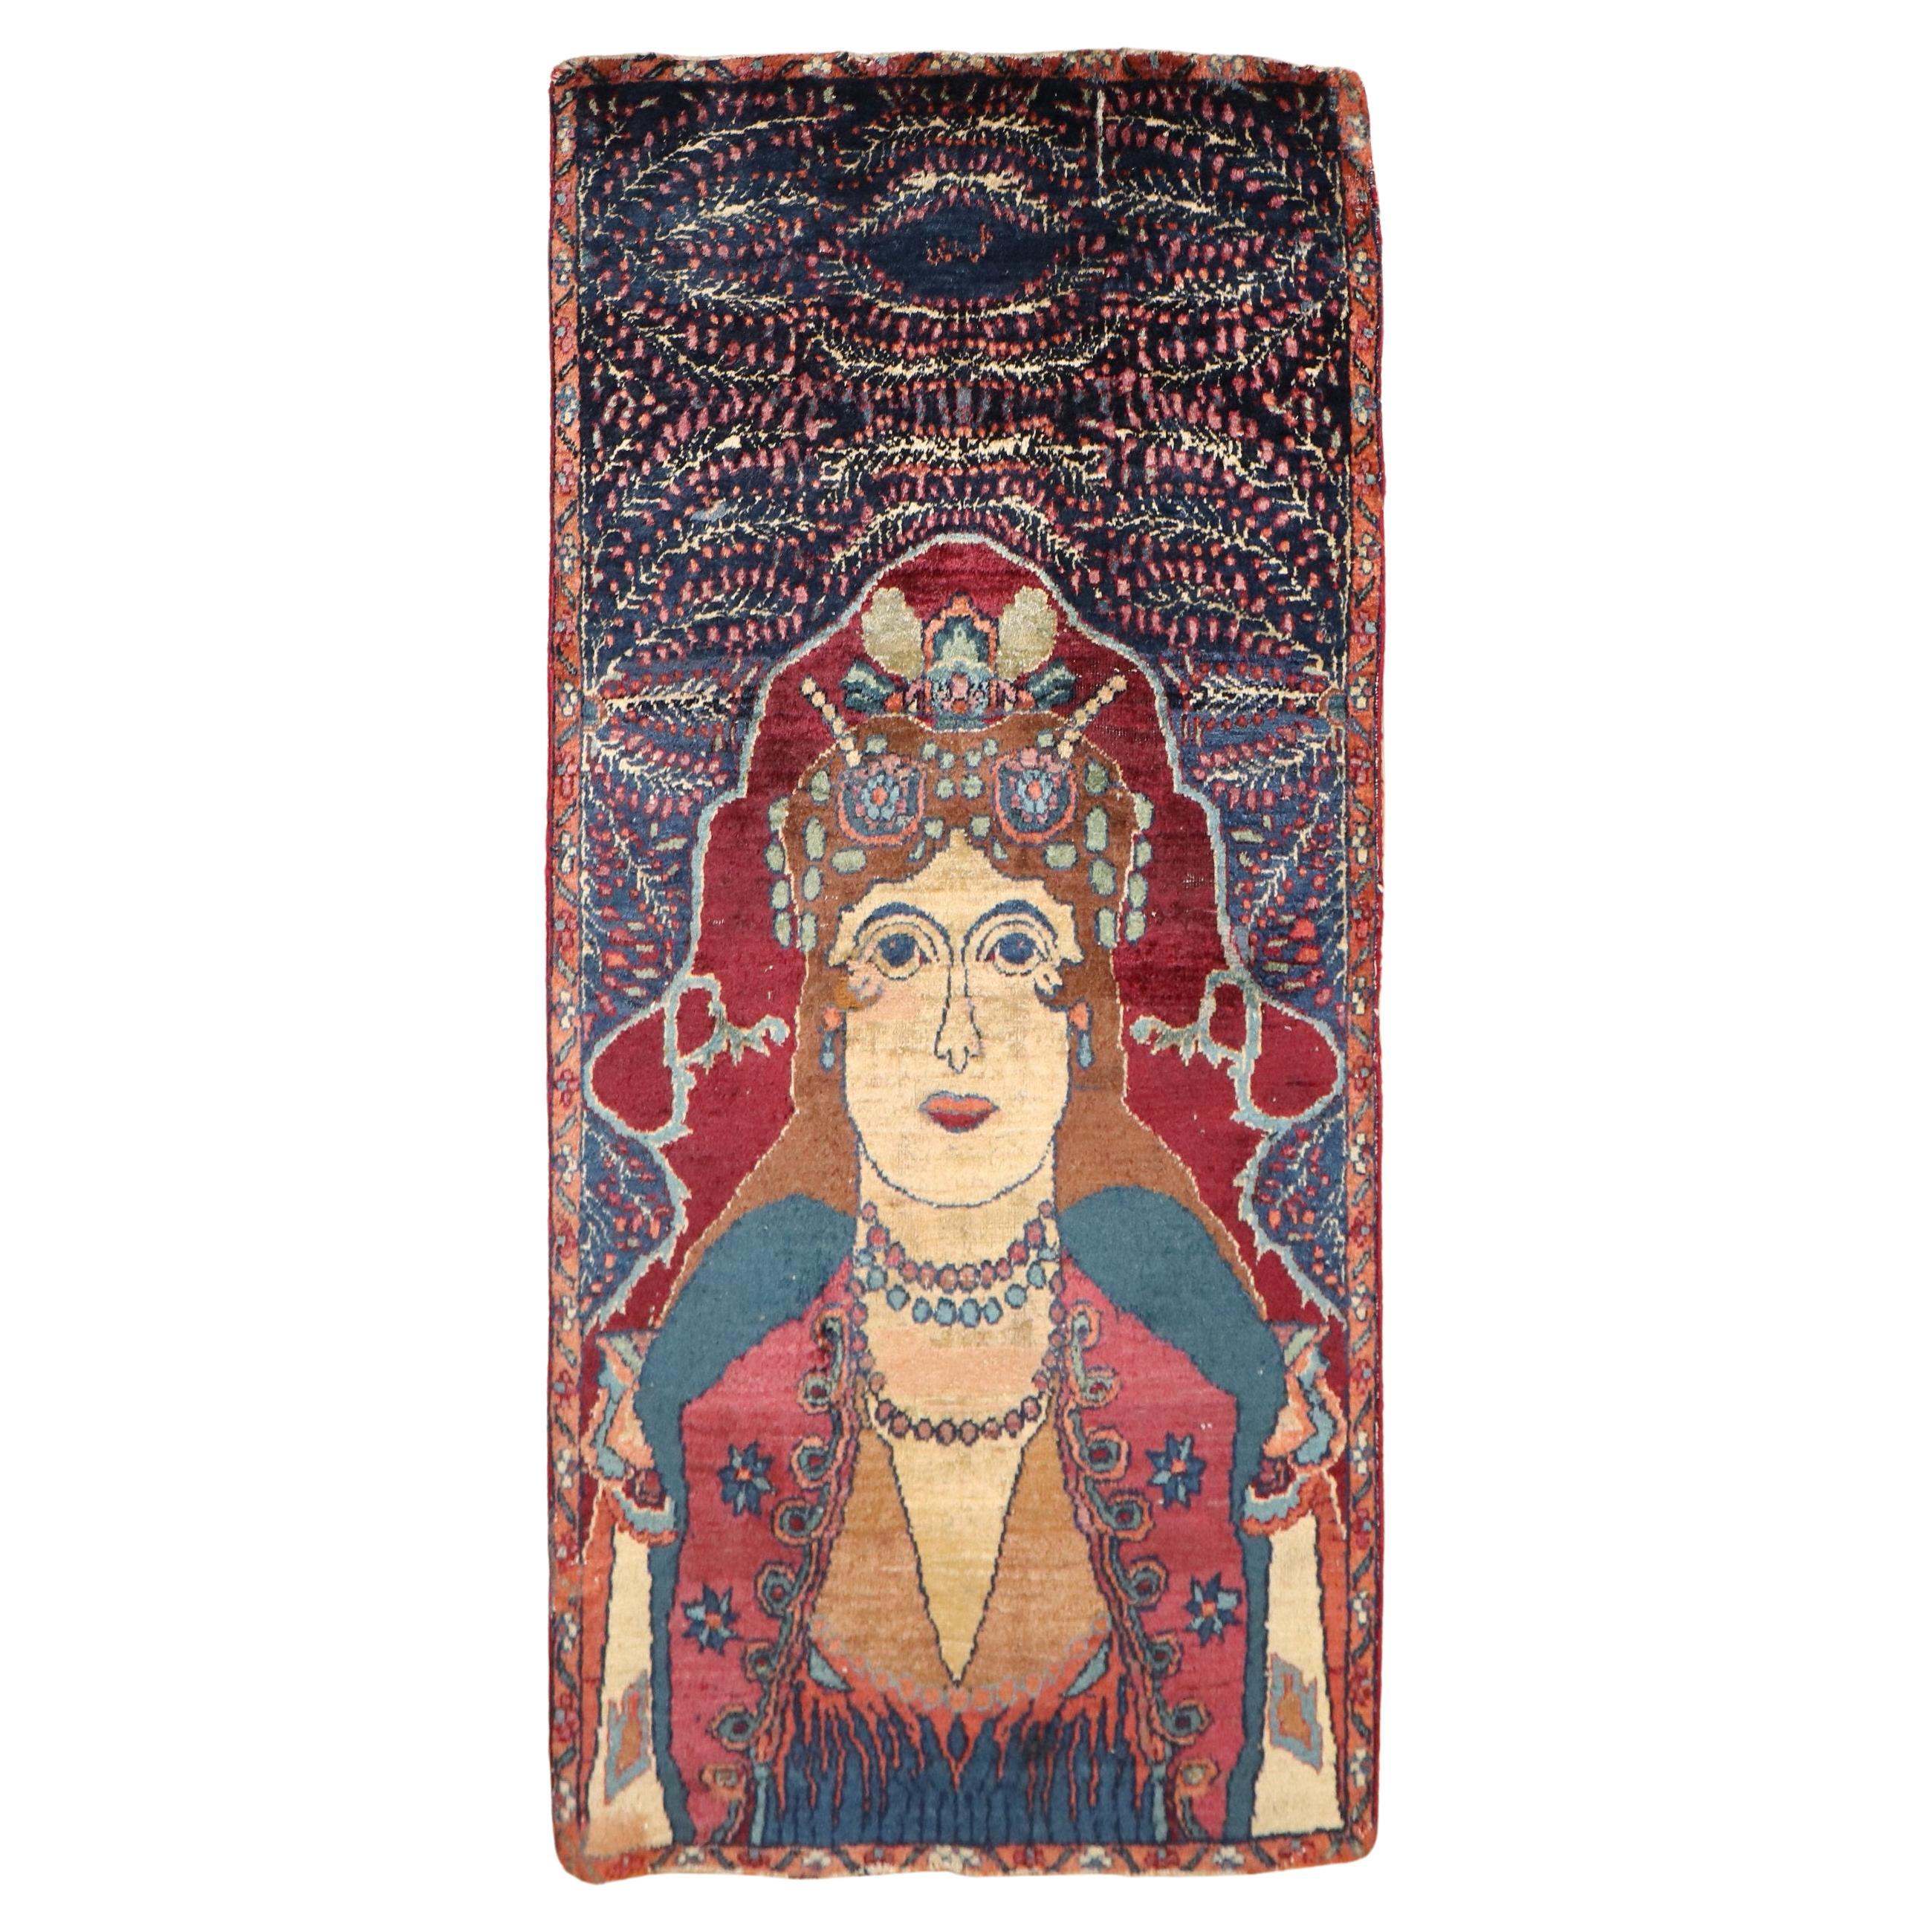 Zabihi Collection Goddess Queen Persian Pictorial Rug